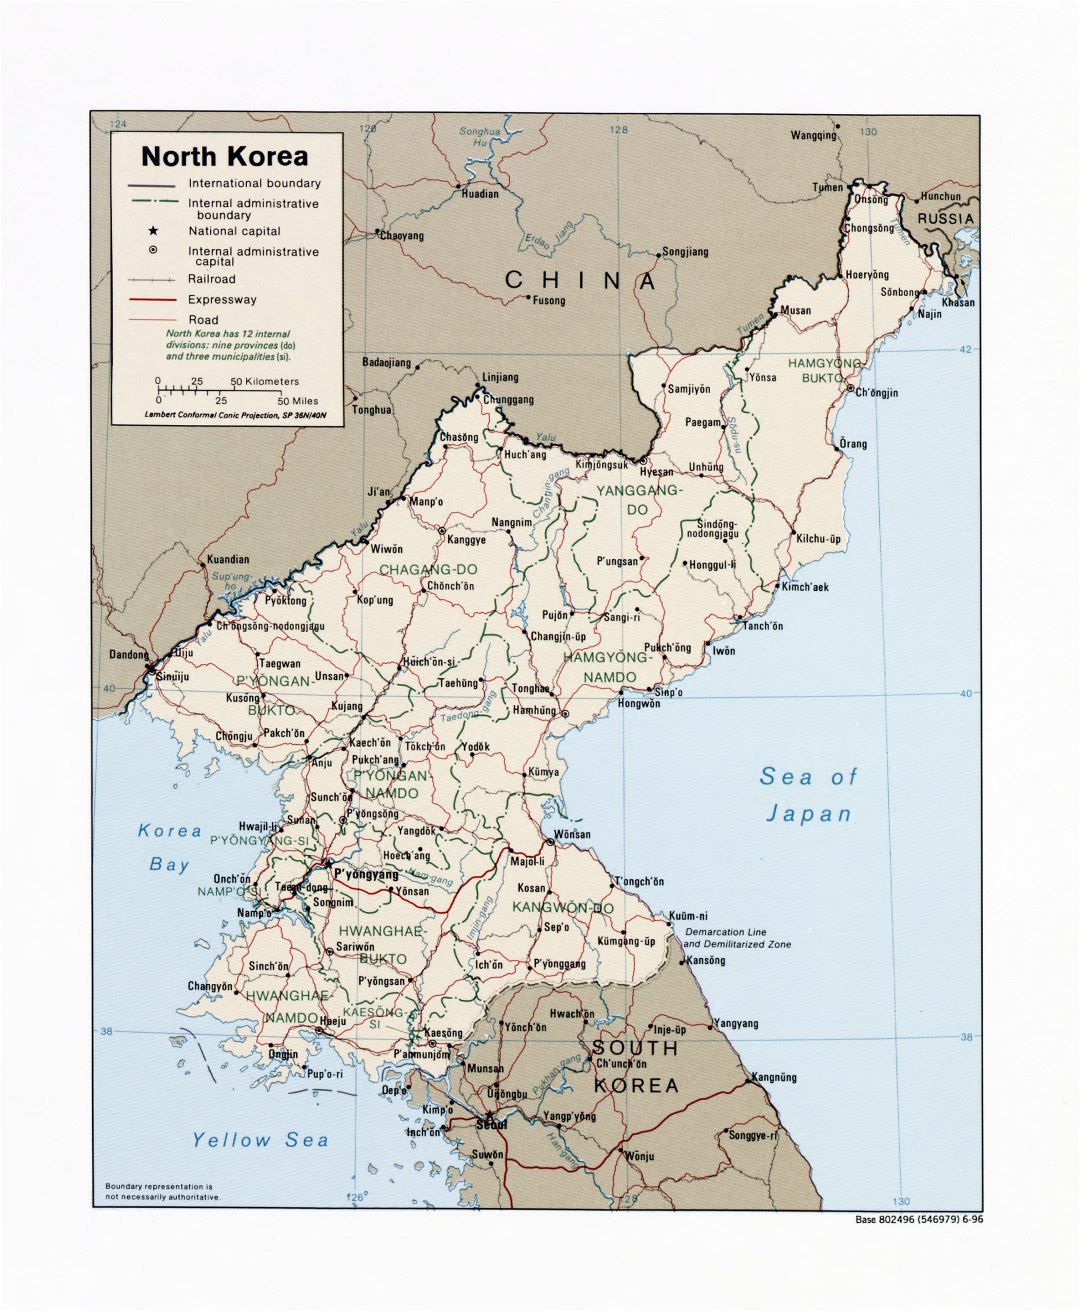 Grande detallado mapa político y administrativo de Corea del Norte con carreteras, ferrocarriles y principales ciudades - 1996